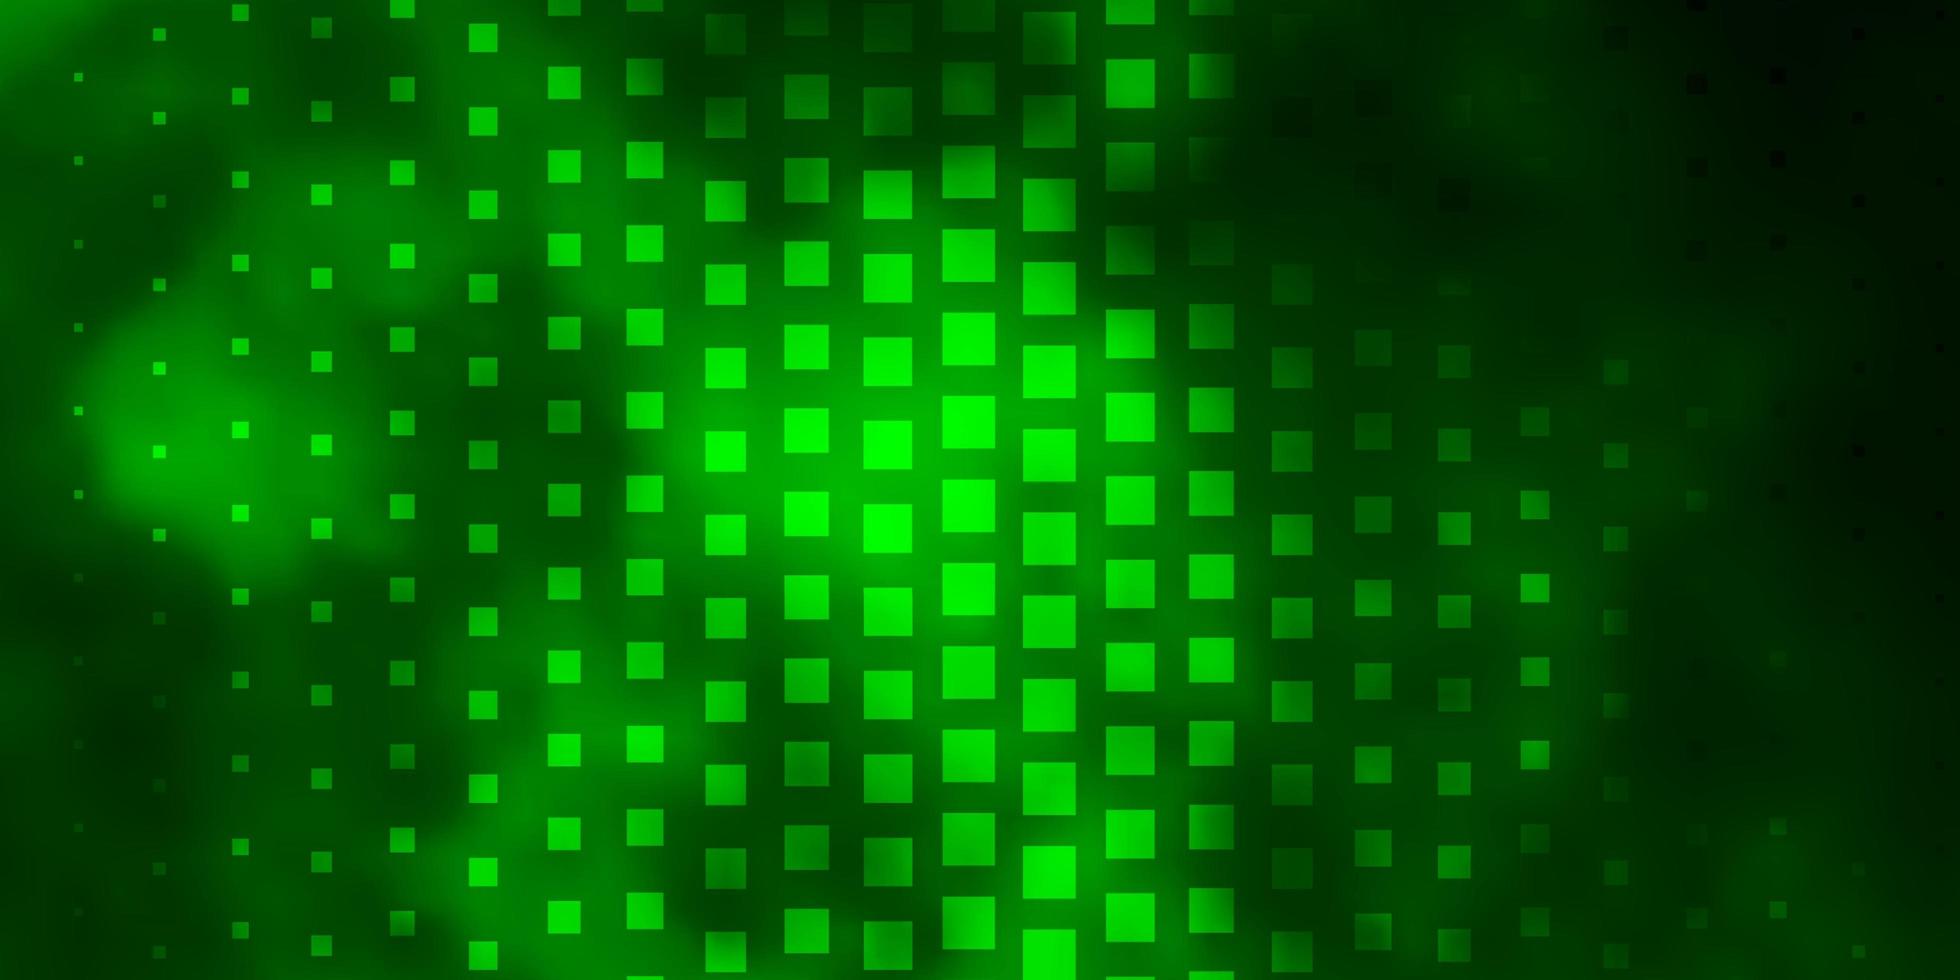 layout de vetor verde claro com retângulos de linhas